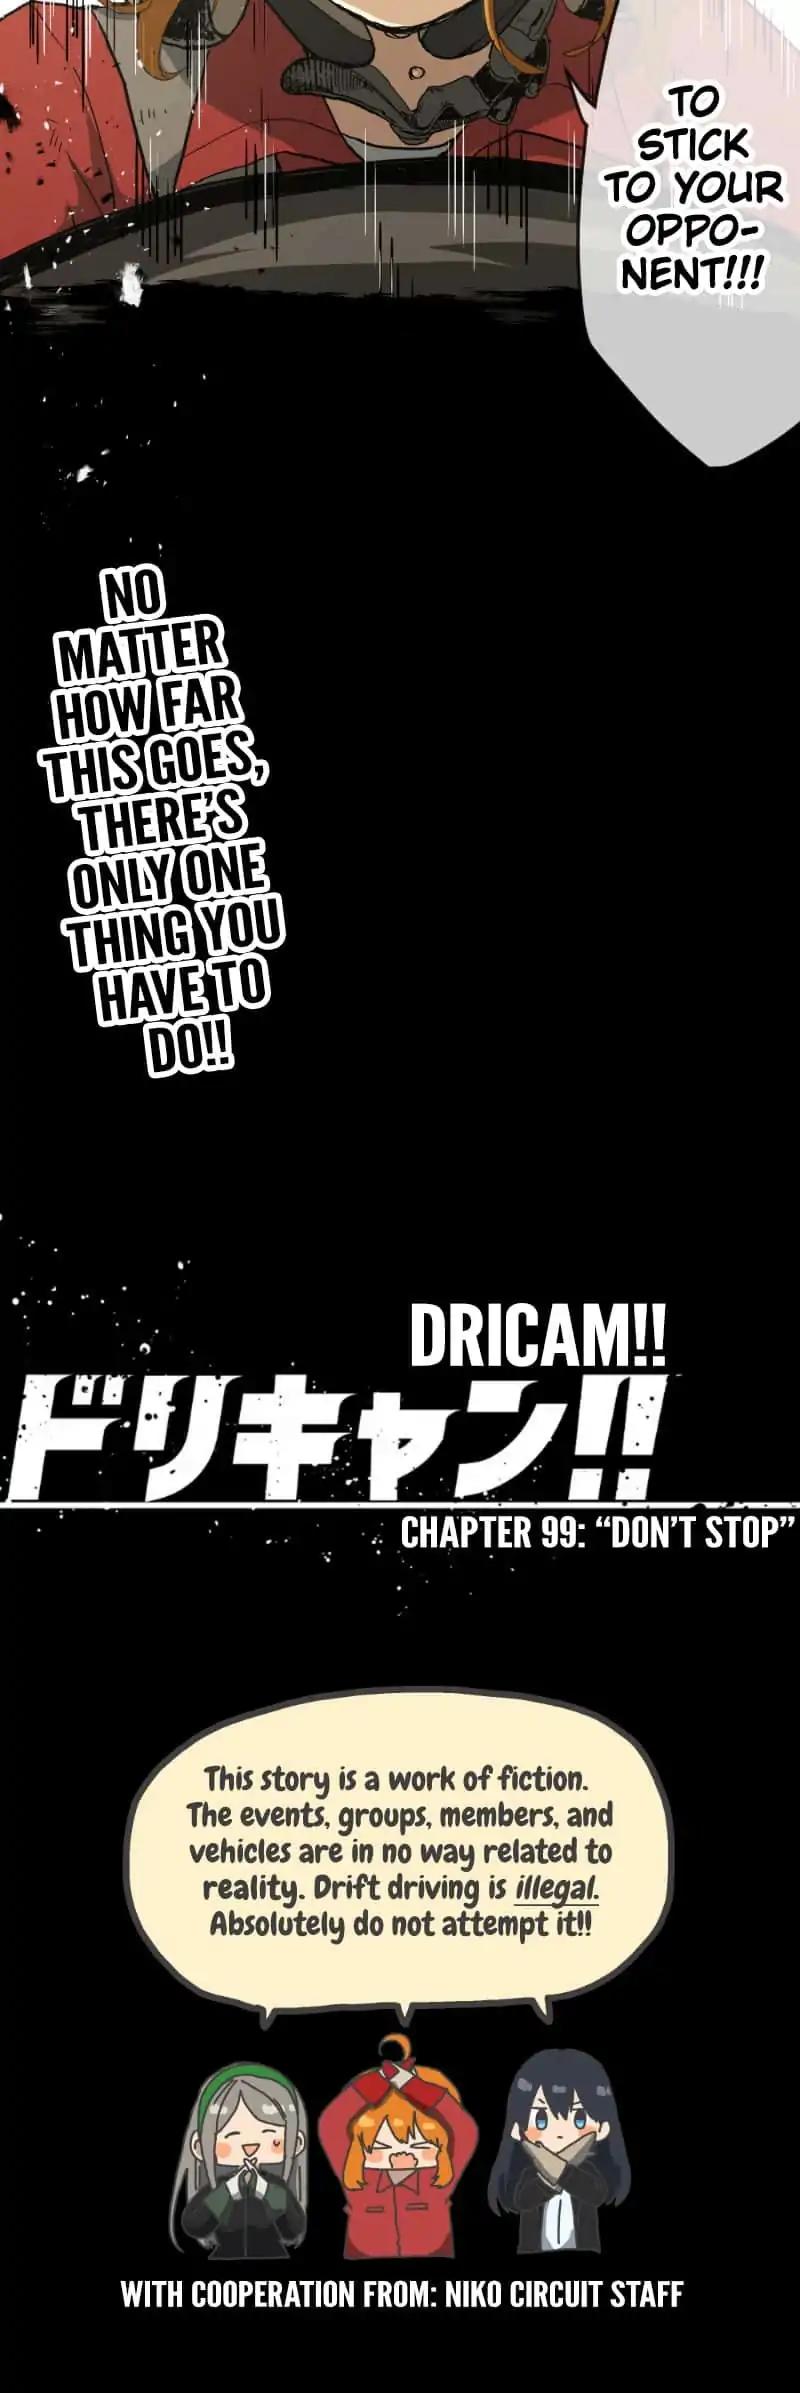 Dricam!! Chapter 99: